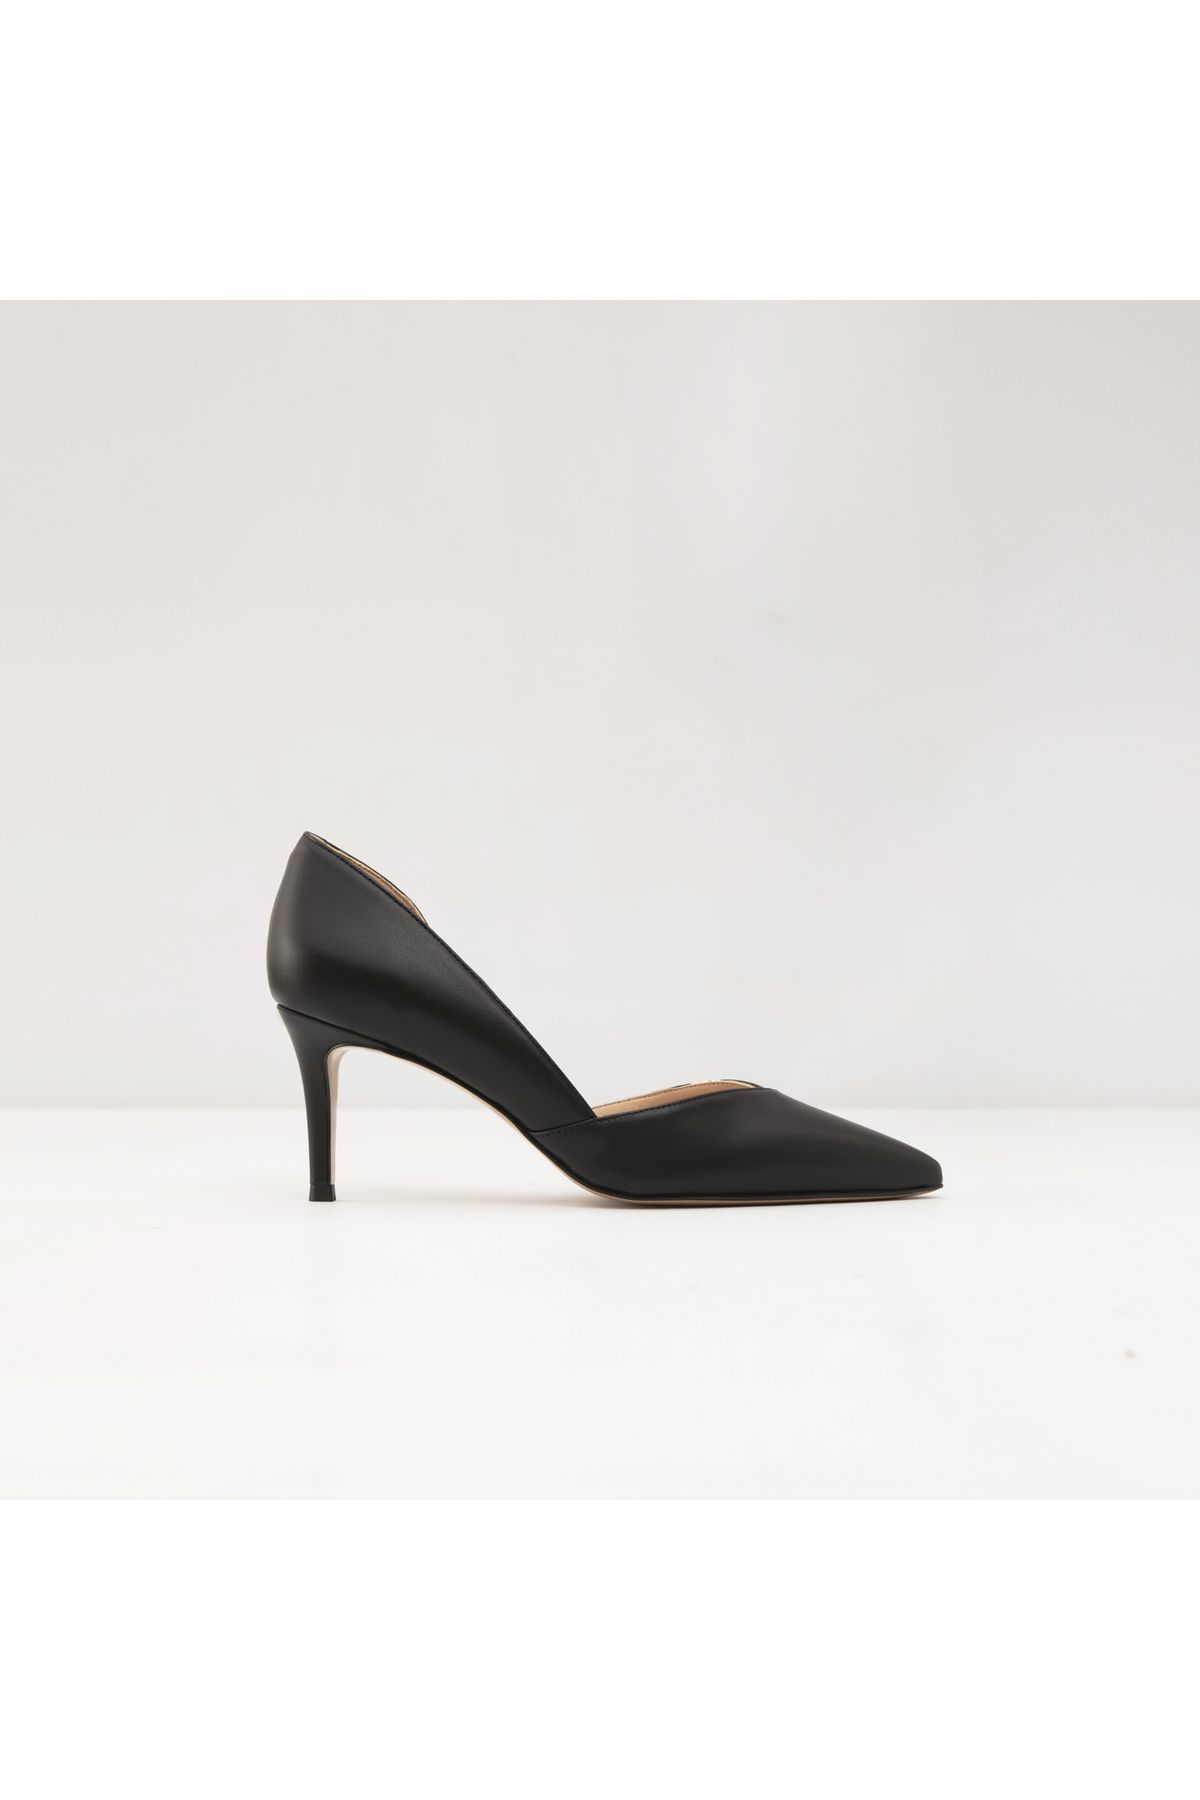 Aldo Unıty-Tr - Siyah Kadın Topuklu Ayakkabı